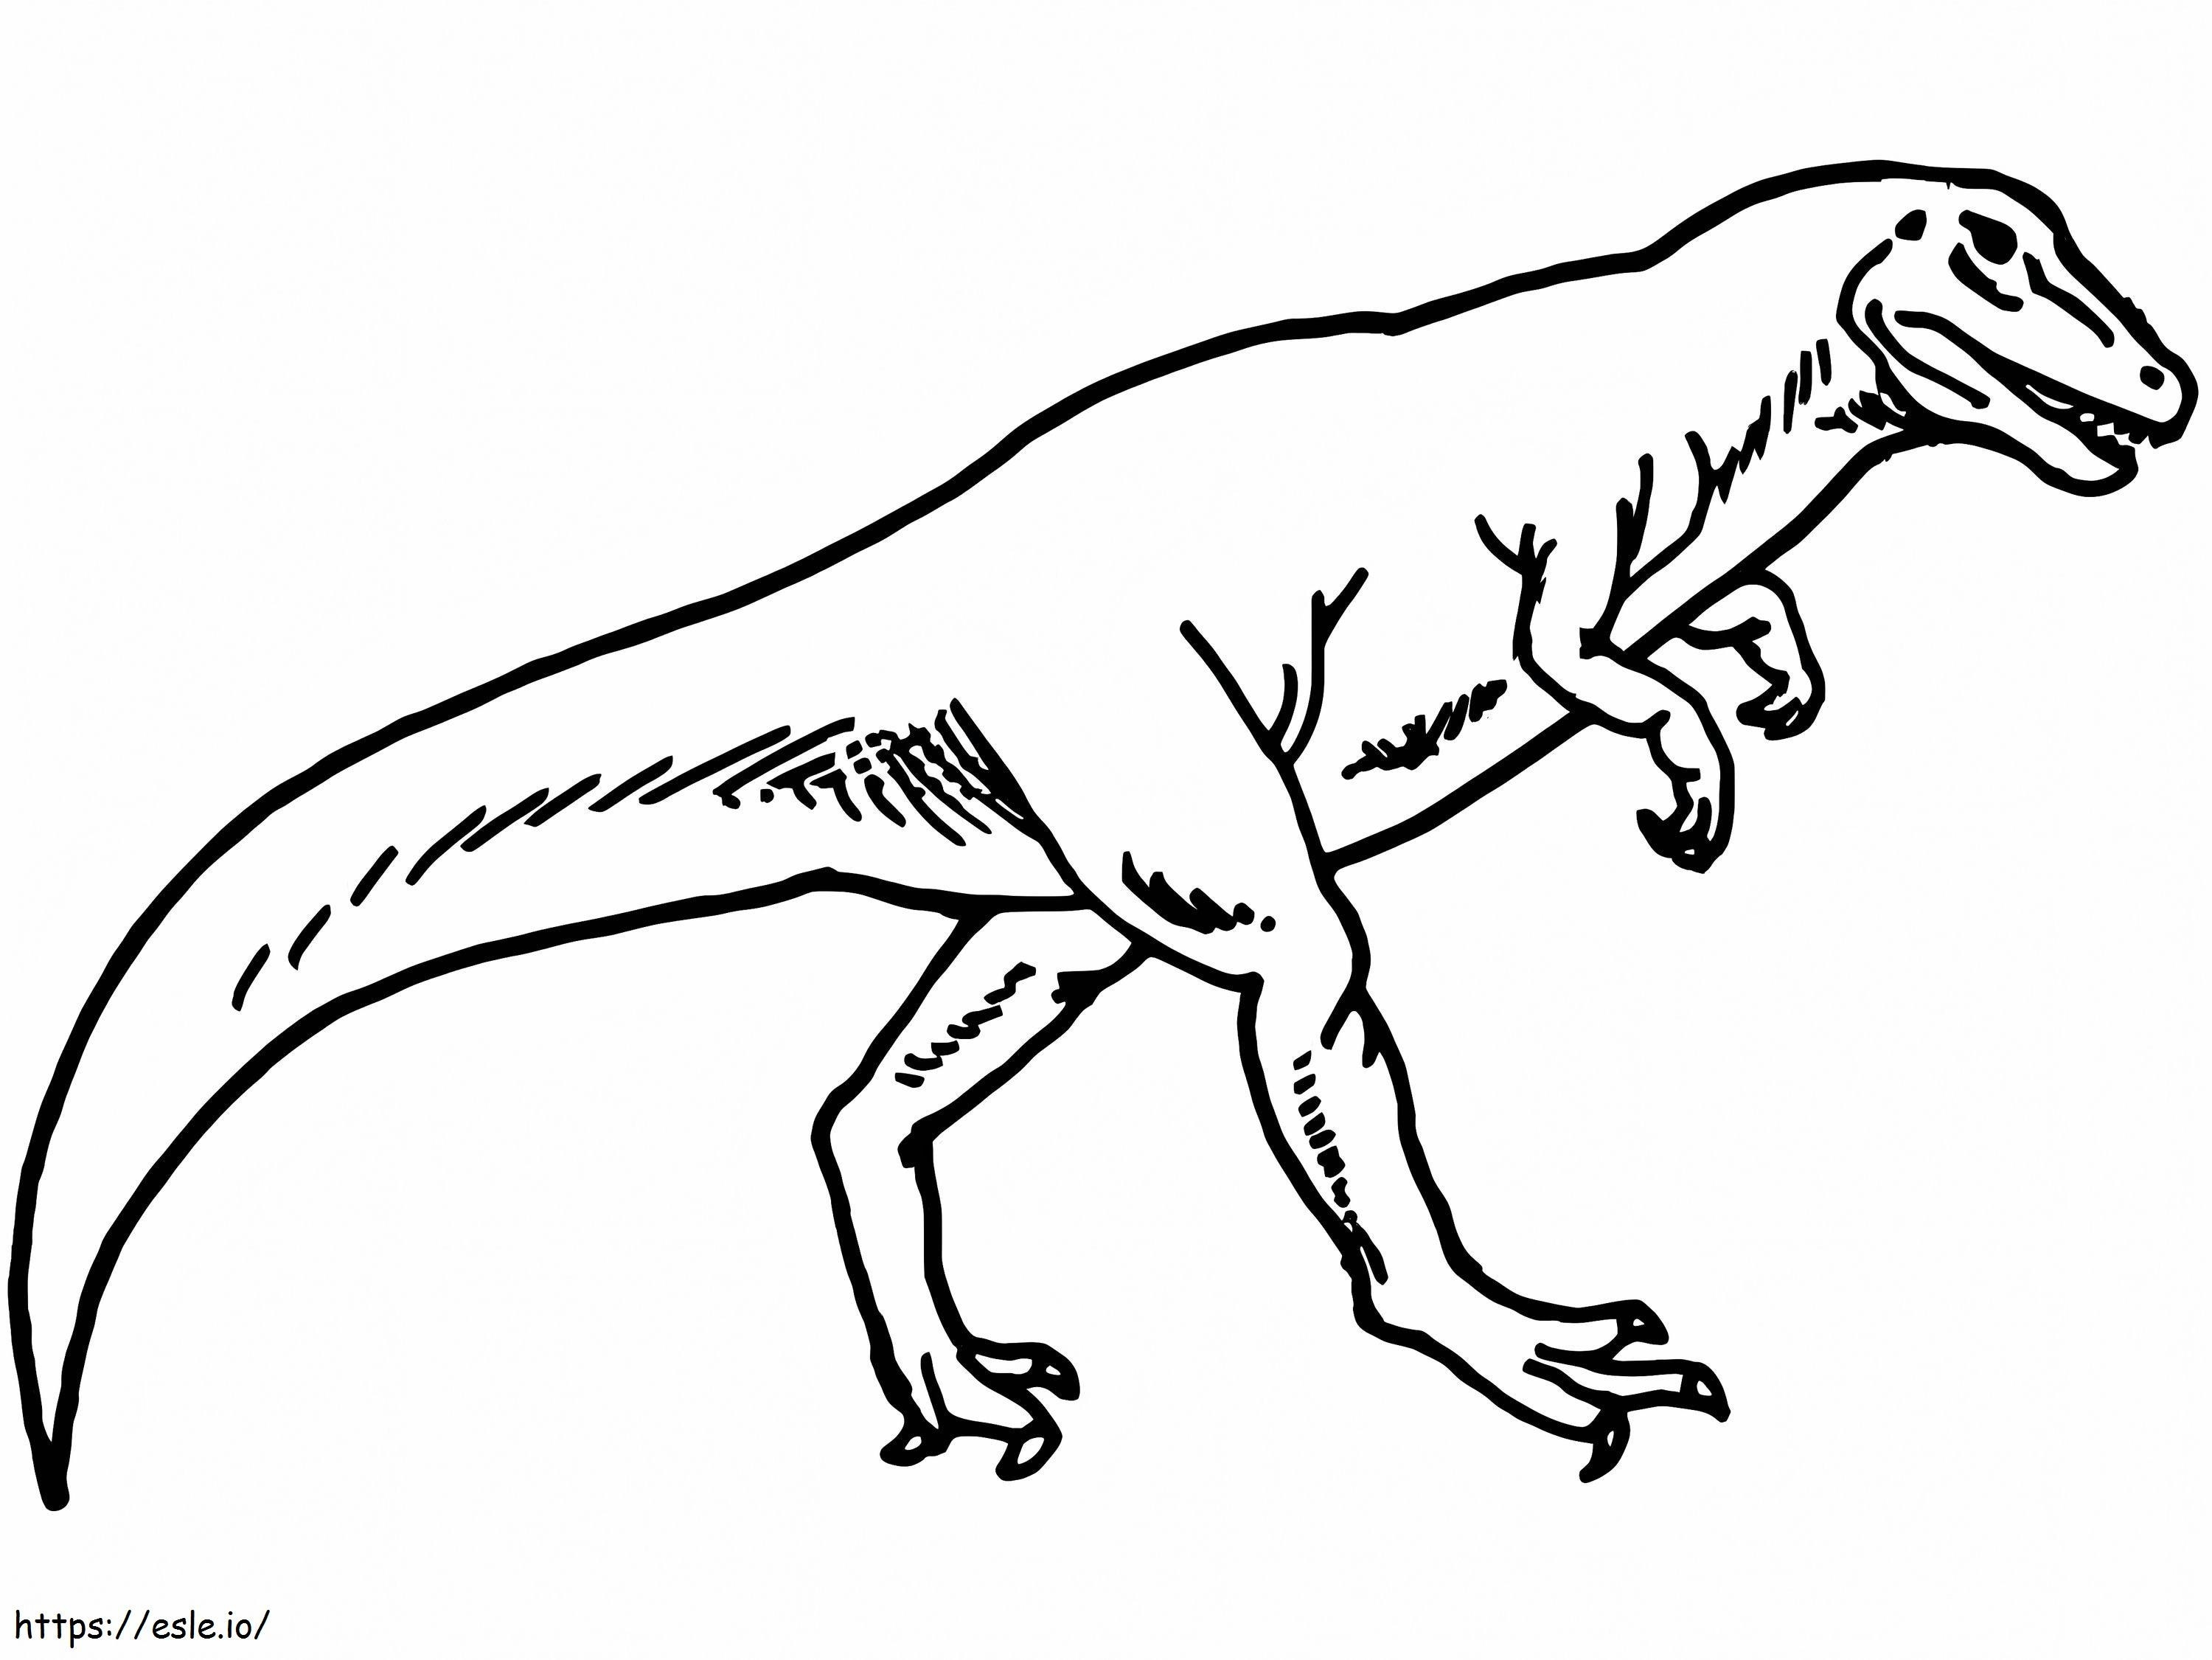 Dinossauro Allosaure 1 para colorir